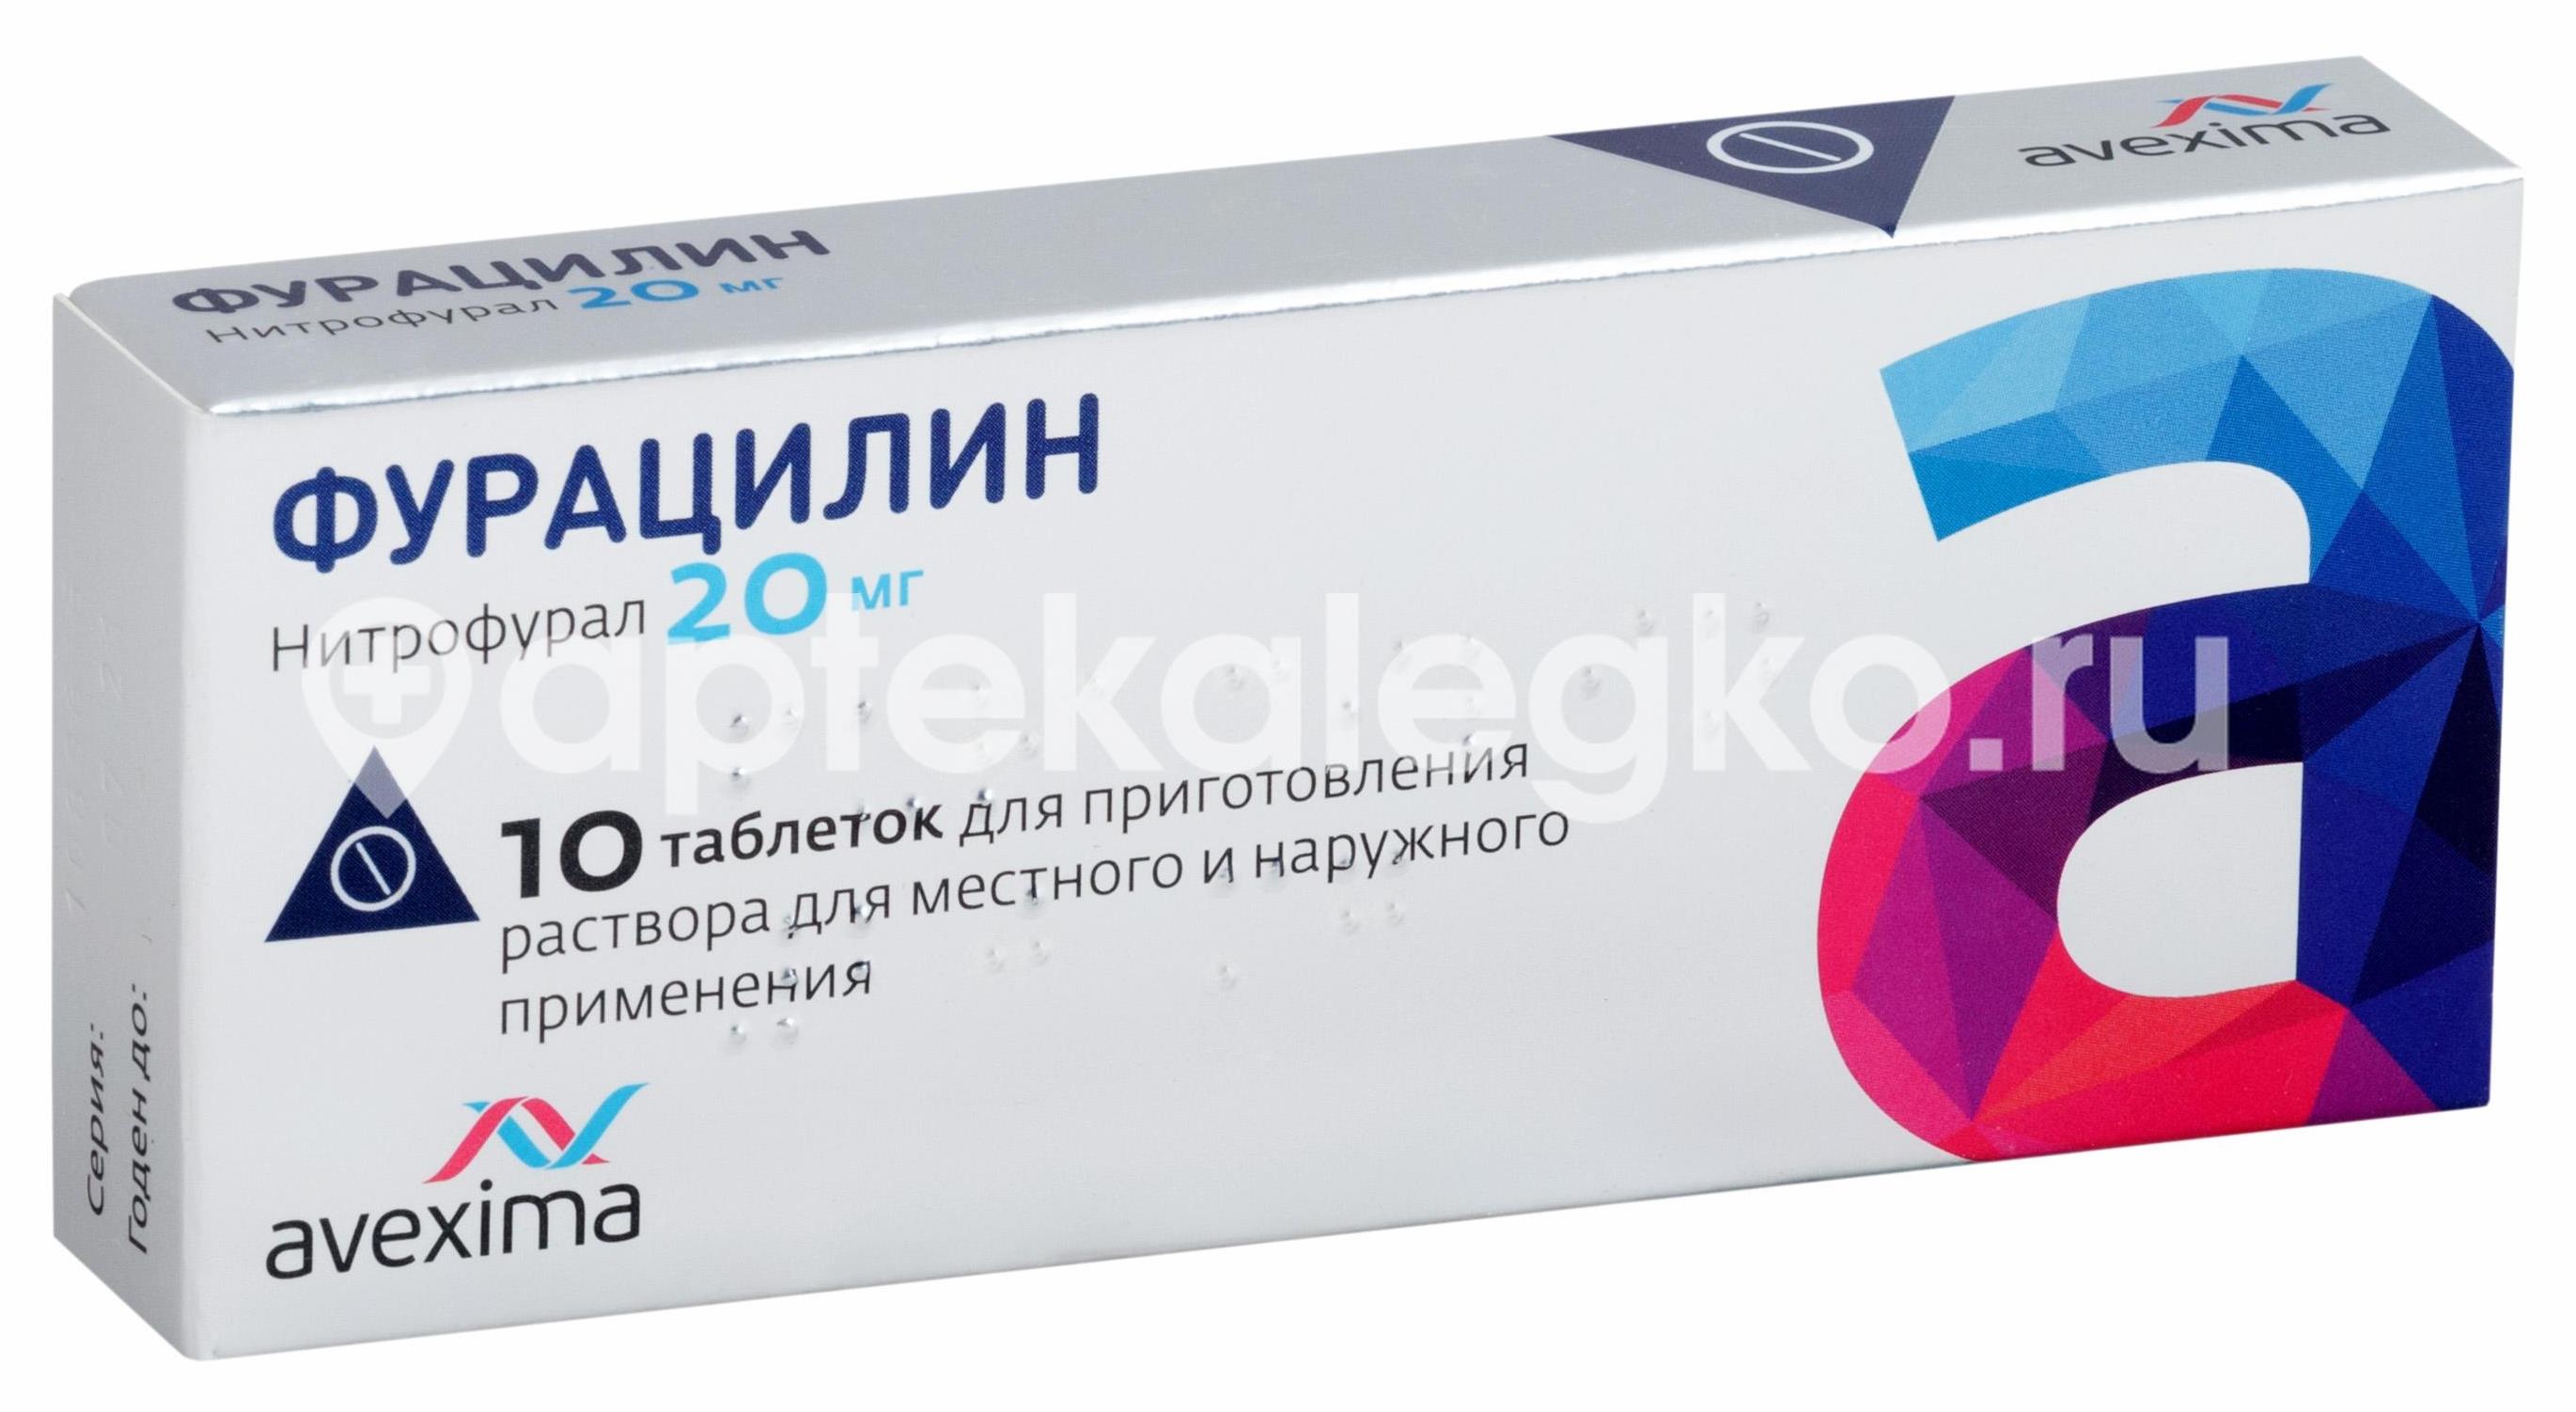 Фурацилин авексима 20мг. 10шт. таблетки - 1